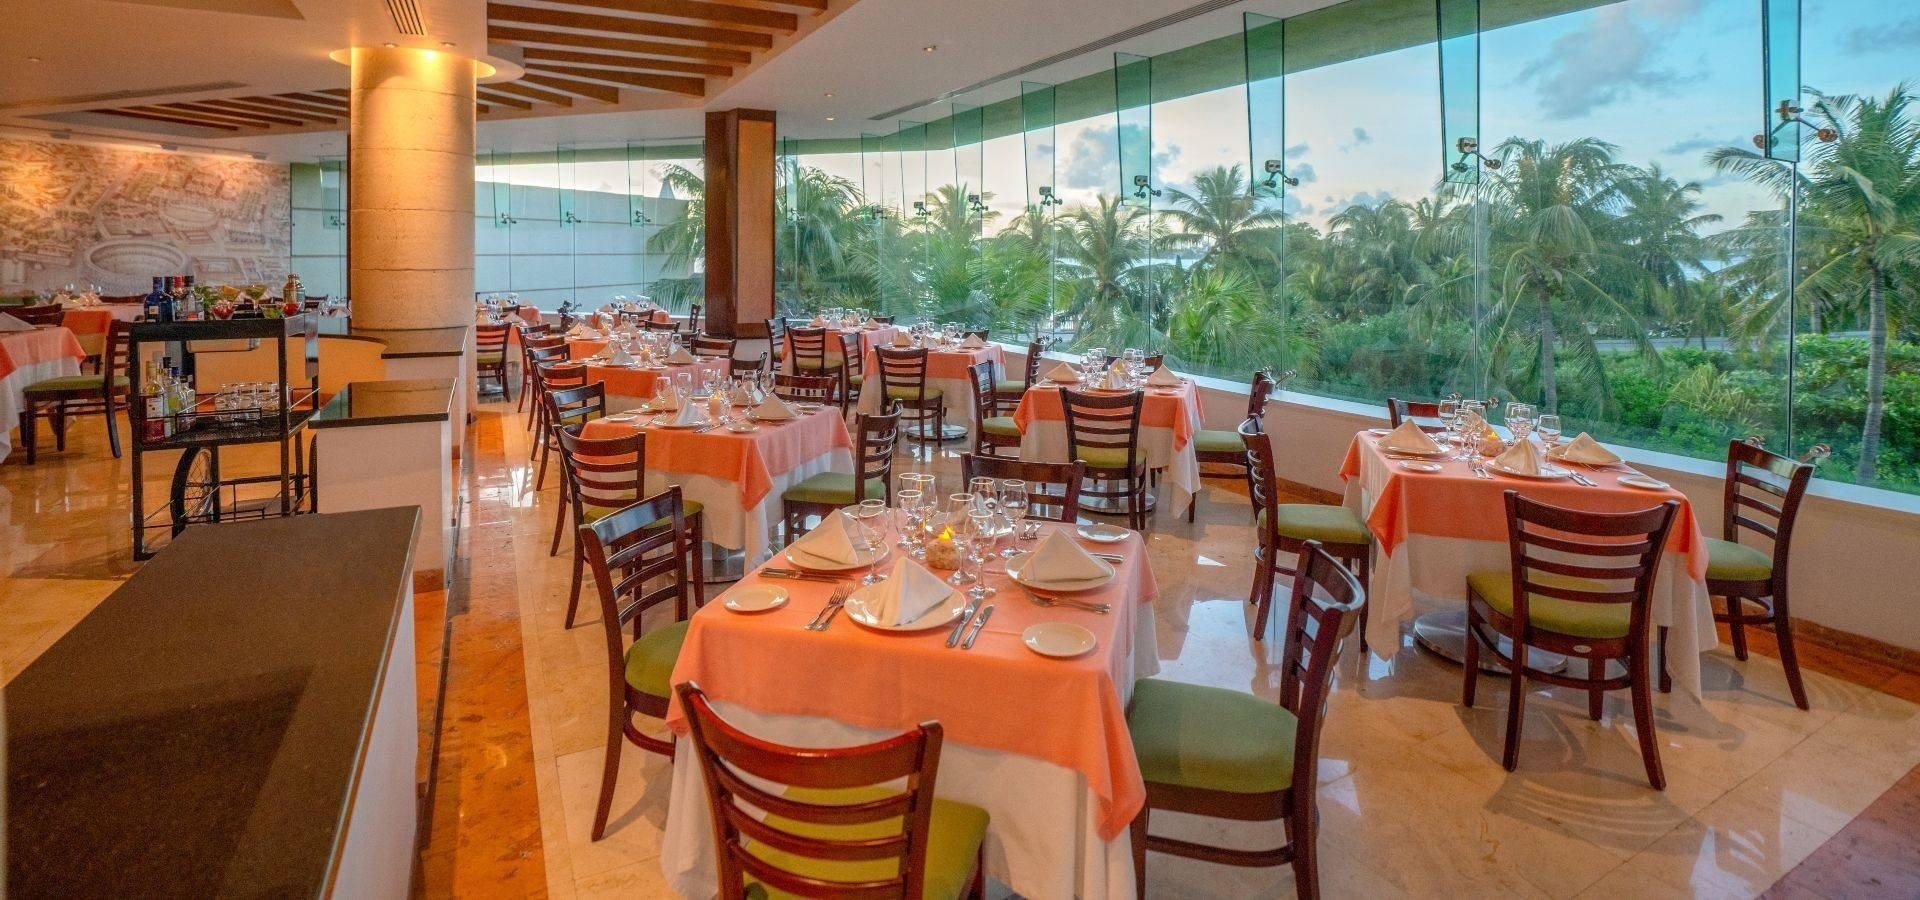 Restaurante El Mirador com vista para o jardim de palmeiras do The Villas by Grand Park Royal Cancun